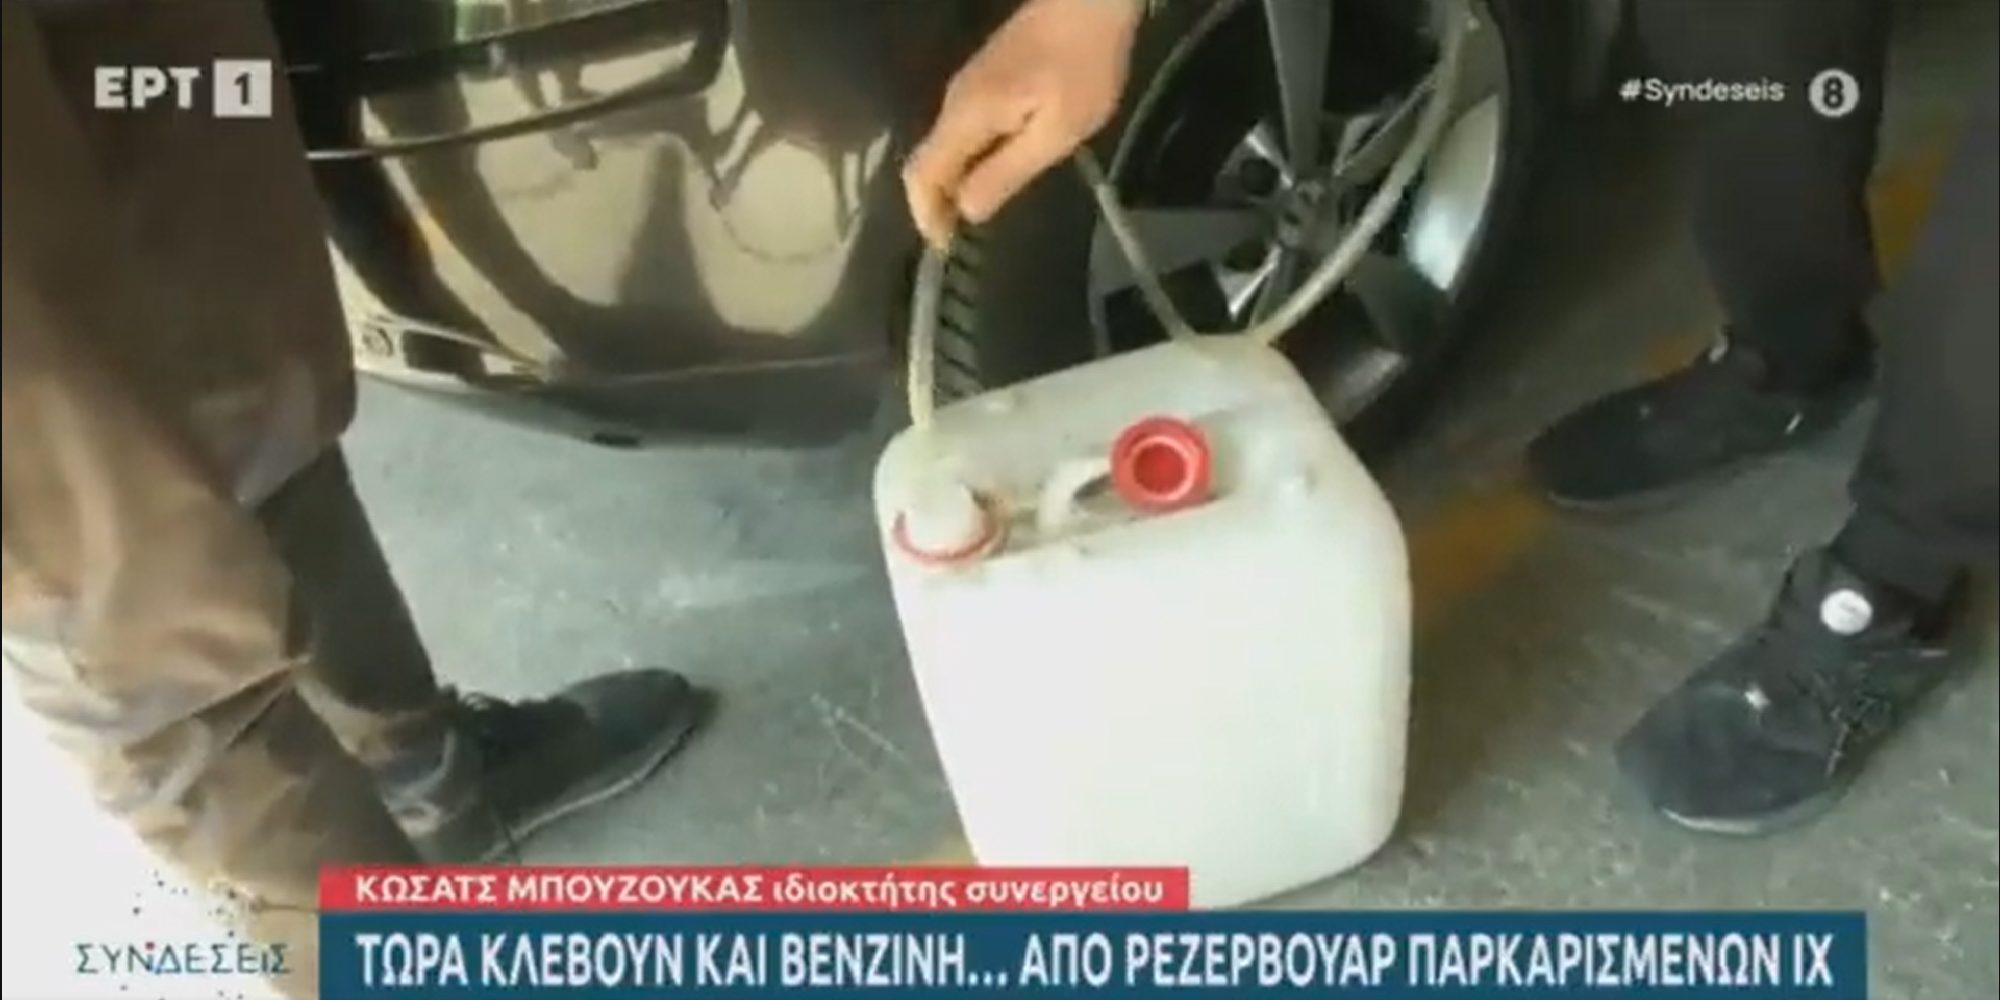 Απίστευτο ρεπορτάζ της ΕΡΤ: Μας δείχνει πώς να κλέβουμε εύκολα βενζίνη! (VIDEO)